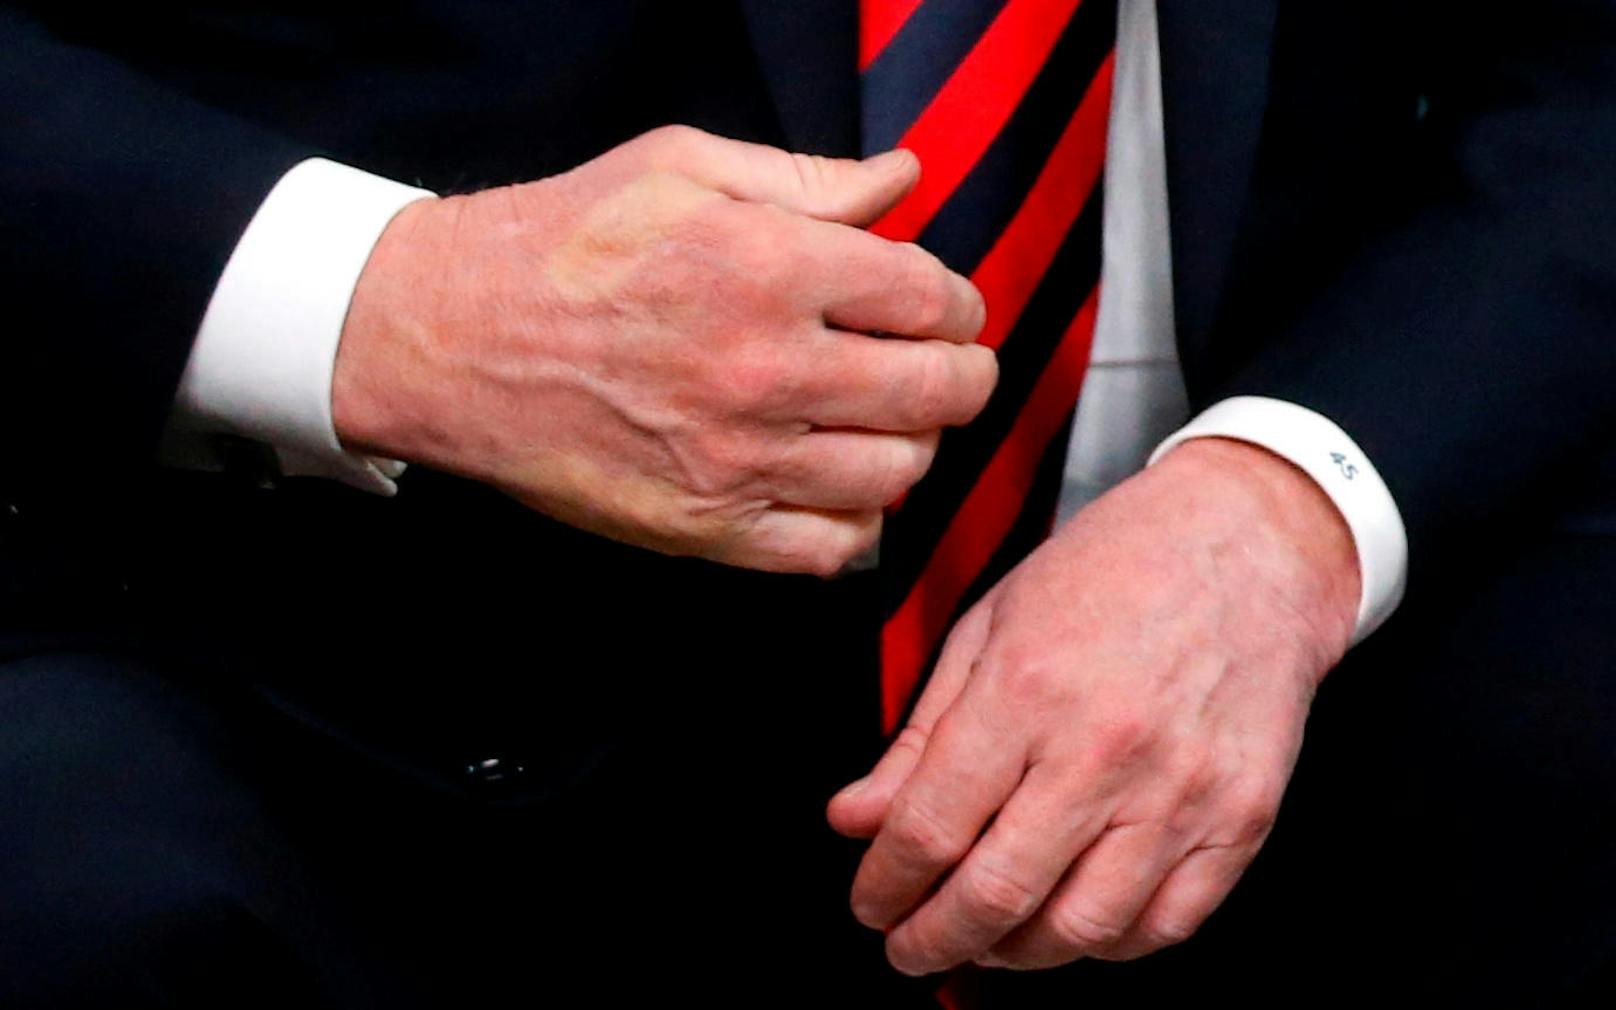 Es ist nicht das erste Mal, dass sich die beiden ein "Handshake Battle" liefern. Beim G-7-Gipfel in Kanada im vergangenen Jahr, drückte Macron Trumps Hand so fest,<a href="https://www.heute.at/welt/news/story/Rache-fuer-Paris--Macron--quetscht--Trump-Hand-44377536" target="_blank"> dass ein weißer Daumenabdruck zurückblieb.</a>